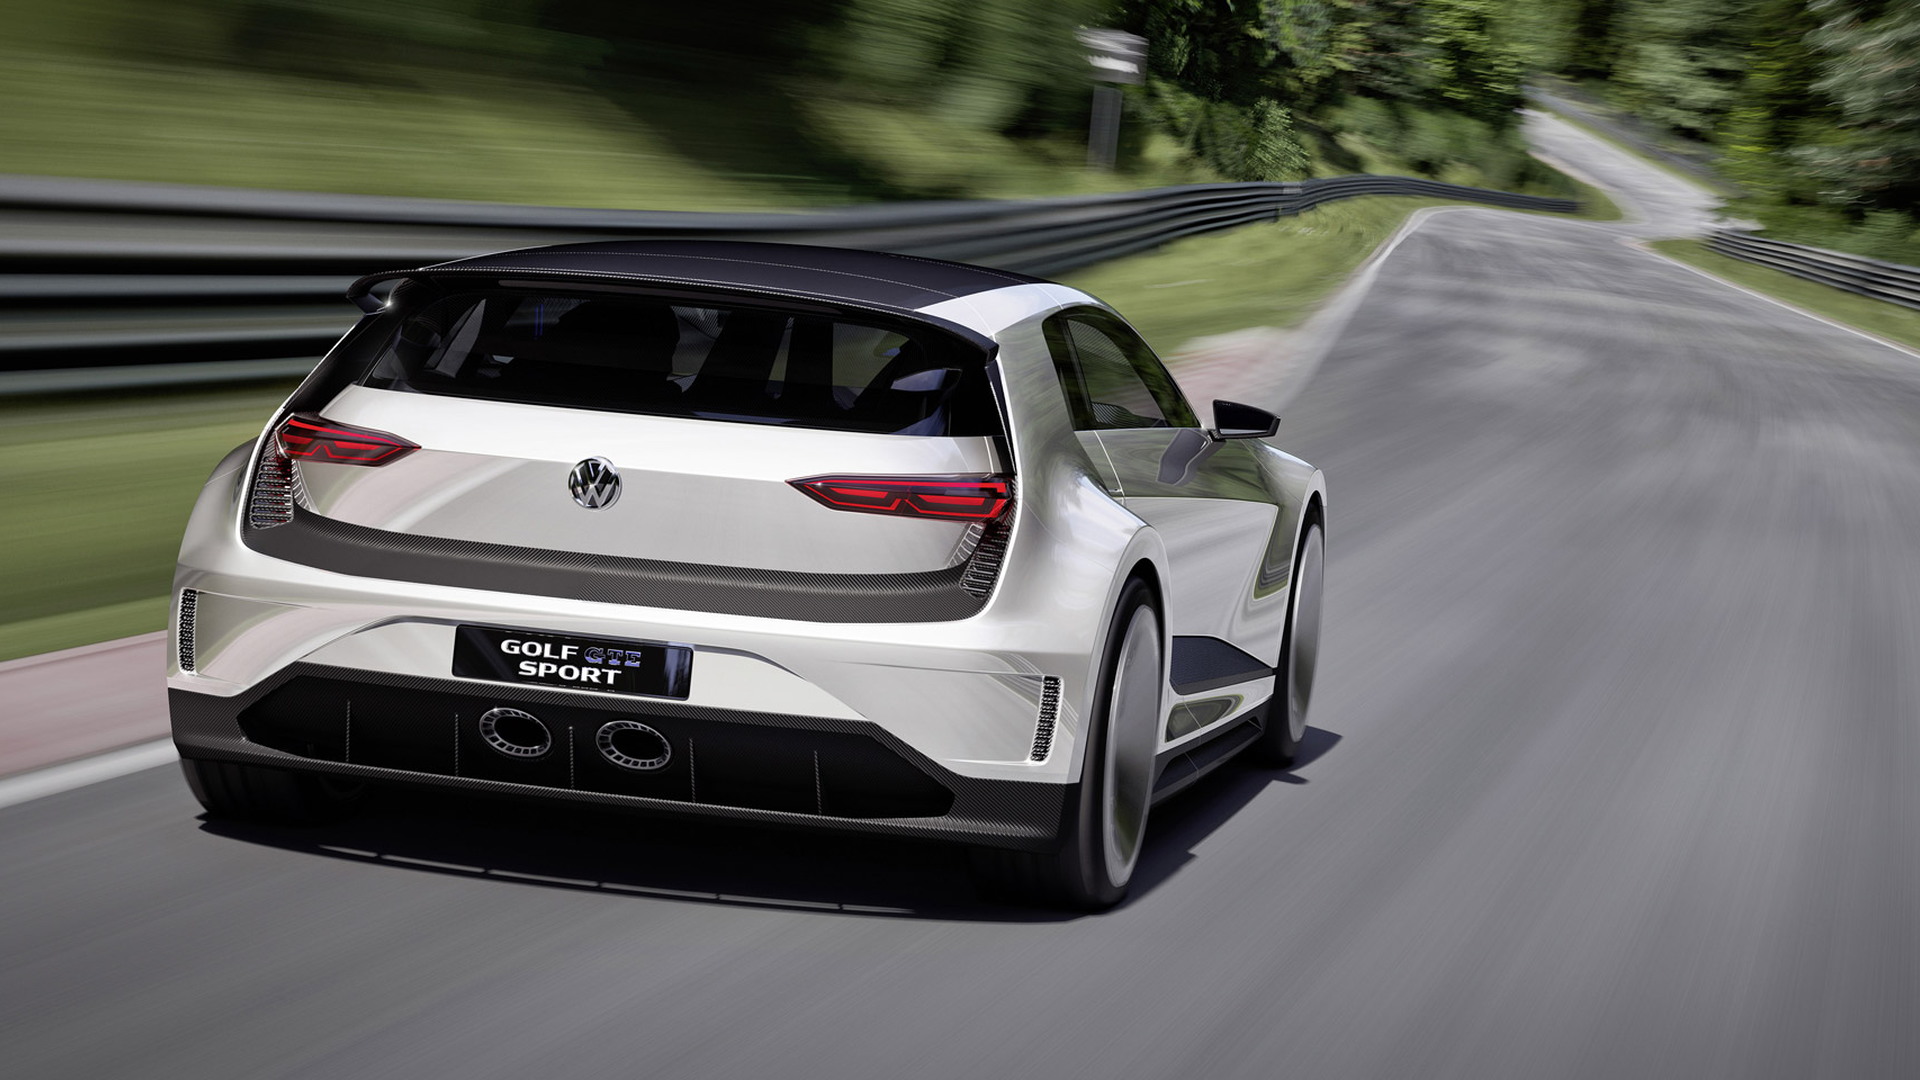 Volkswagen Golf GTE Sport concept, 2015 Wörthersee Tour